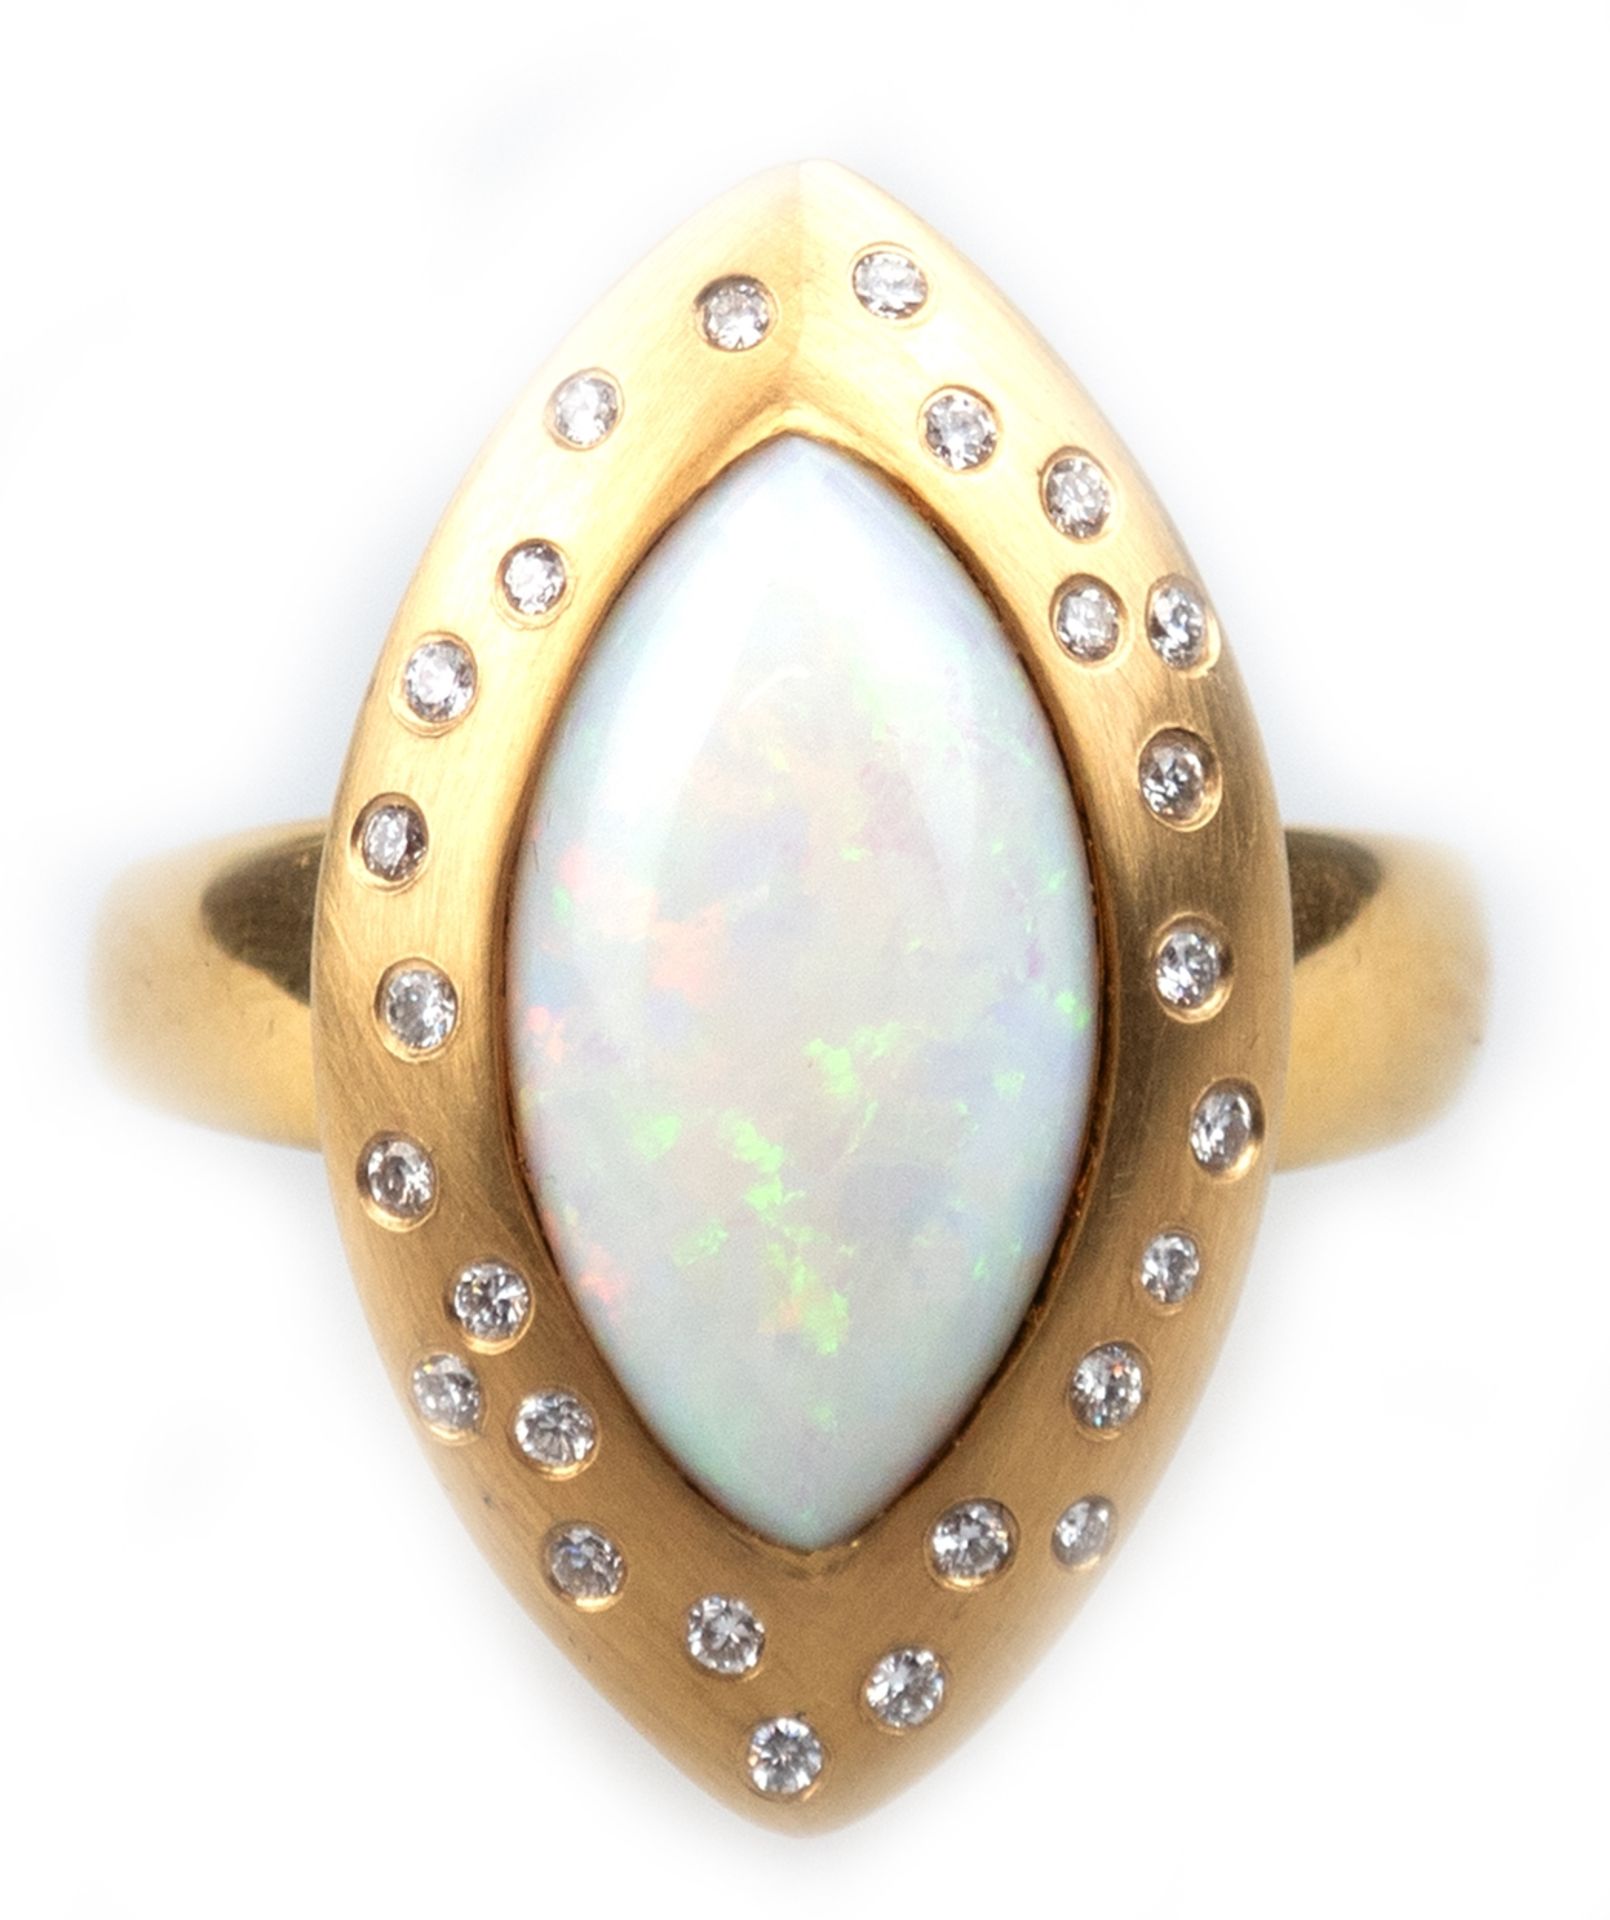 Ring 585er GG, ges. 18,77 g, ausgefasst mit 1 spitzovalem Opal-Cabochon von 3,45 ct. und 26 Brillan